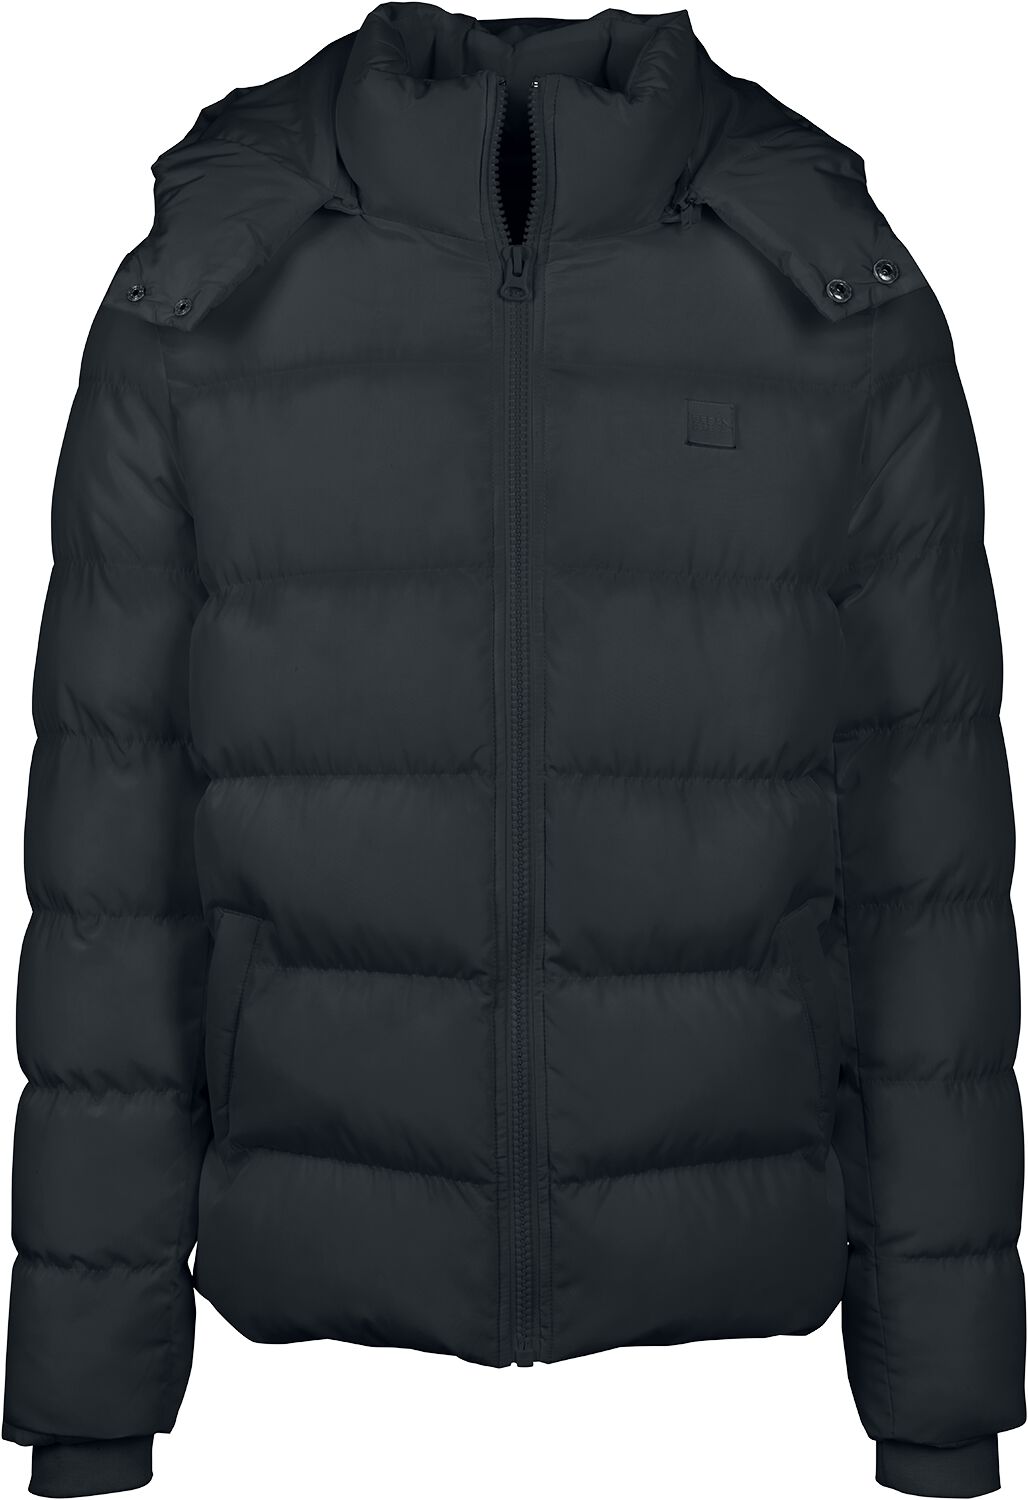 Urban Classics Übergangsjacke - Hooded Puffer Jacket - L bis 5XL - für Männer - Größe XL - schwarz